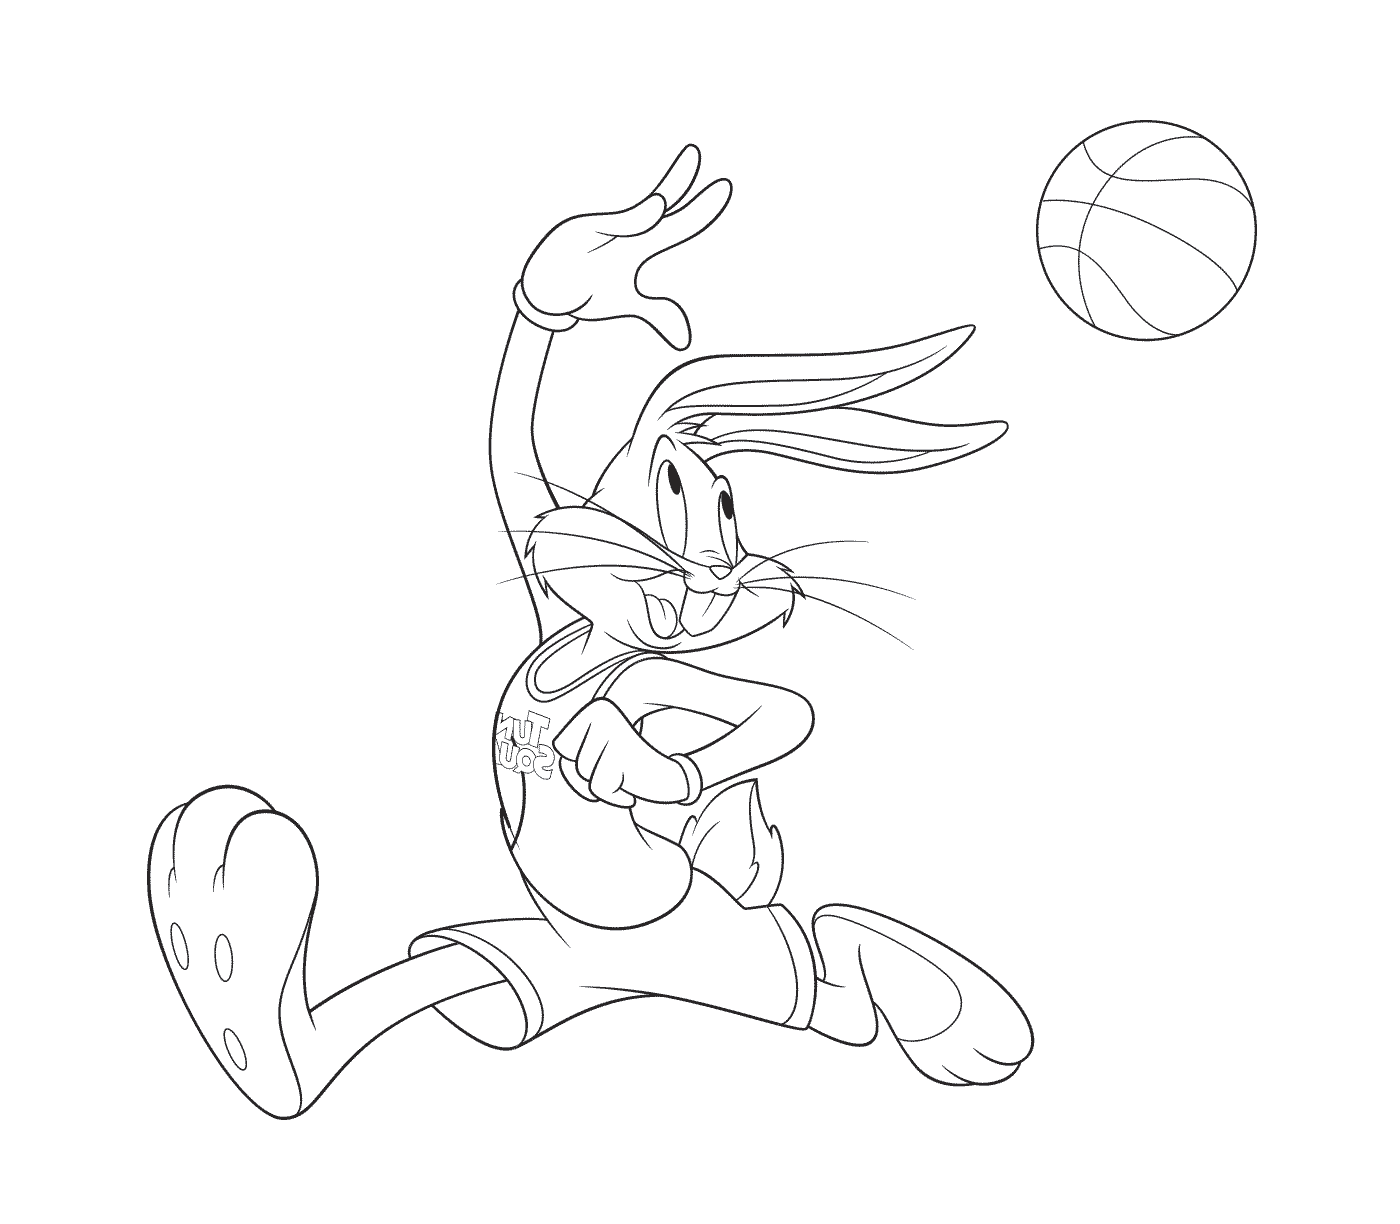  Кролик играет в баскетбол 